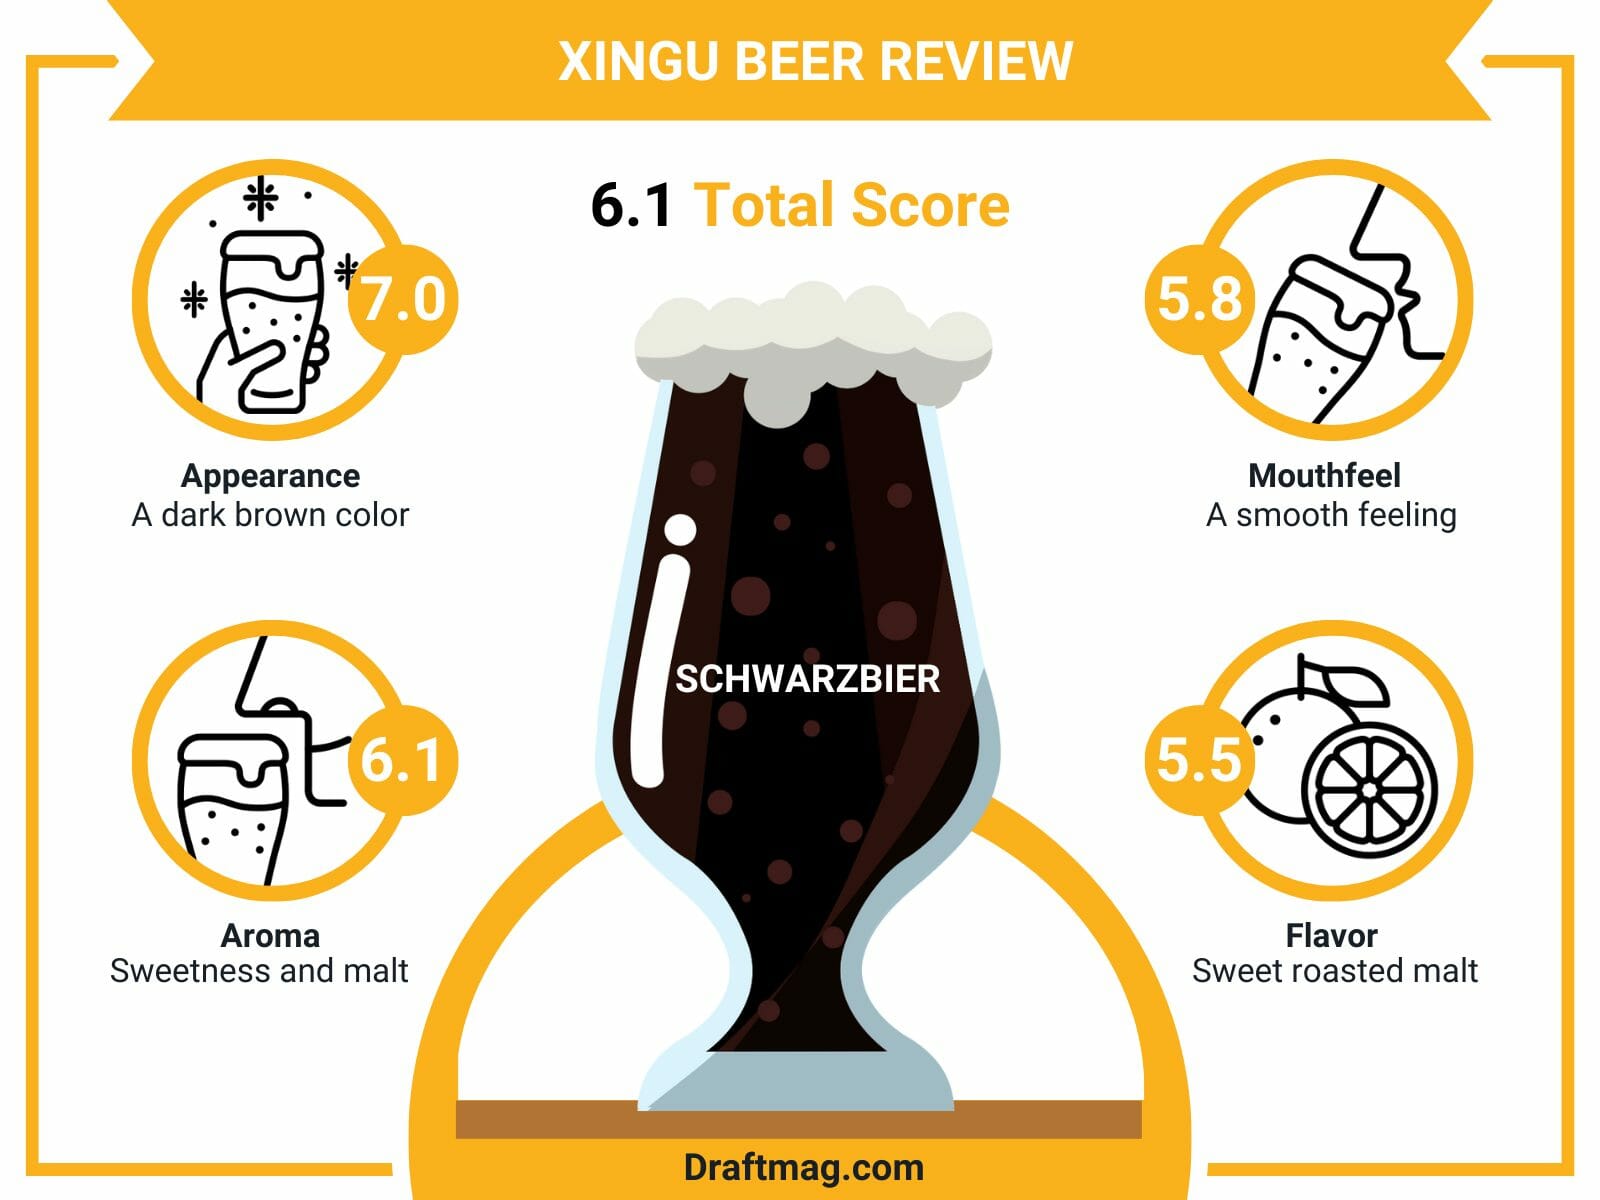 Xingu beer review infographic